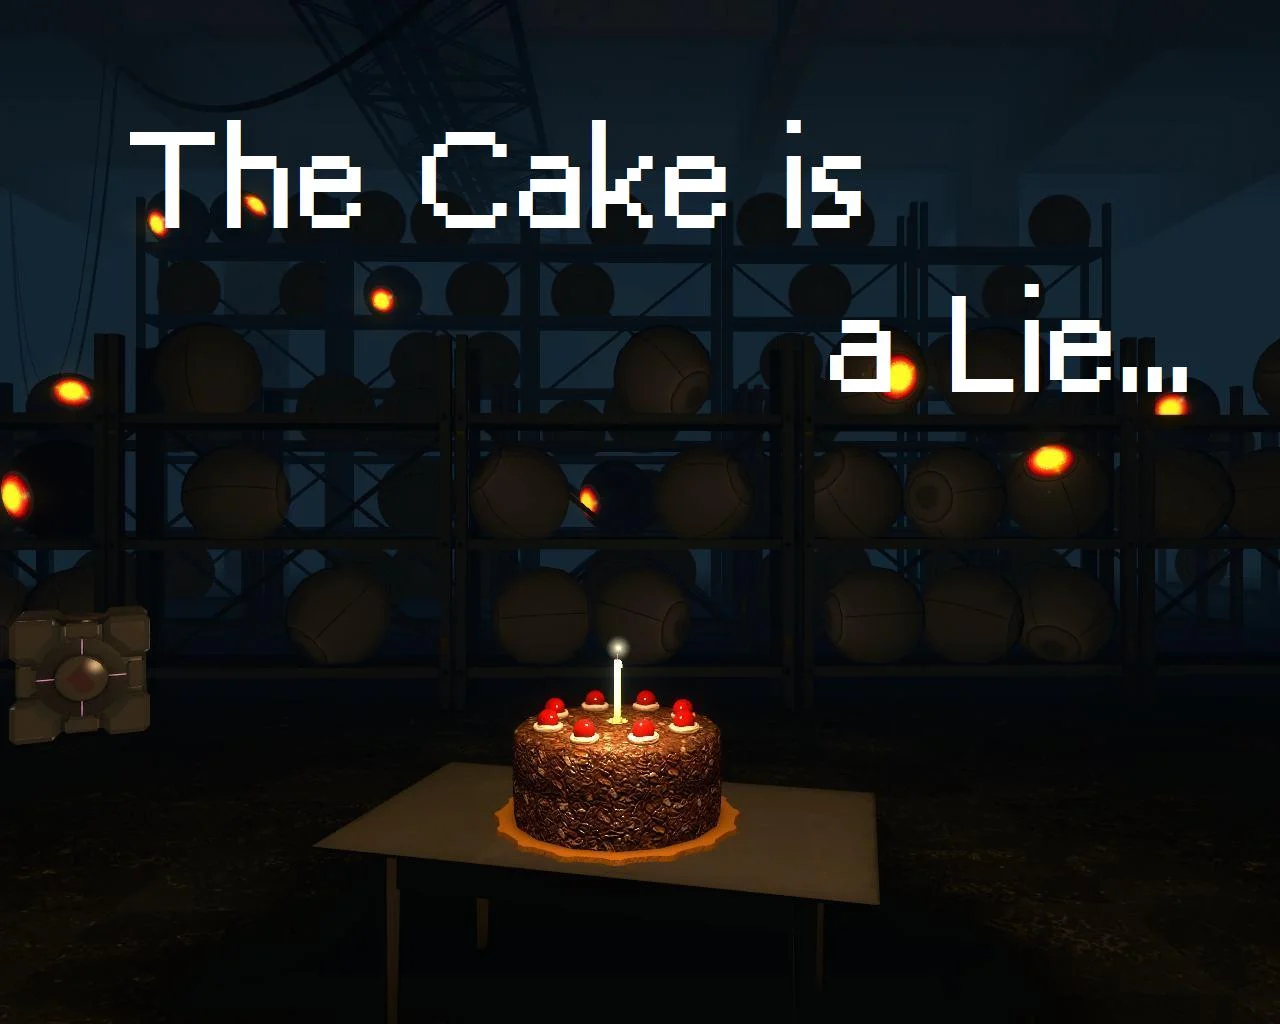 Даже «Portal», настаивающая на том, что хэппи-энда не будет, всё-таки припрятала аппетитный пирог в одной из кладовок